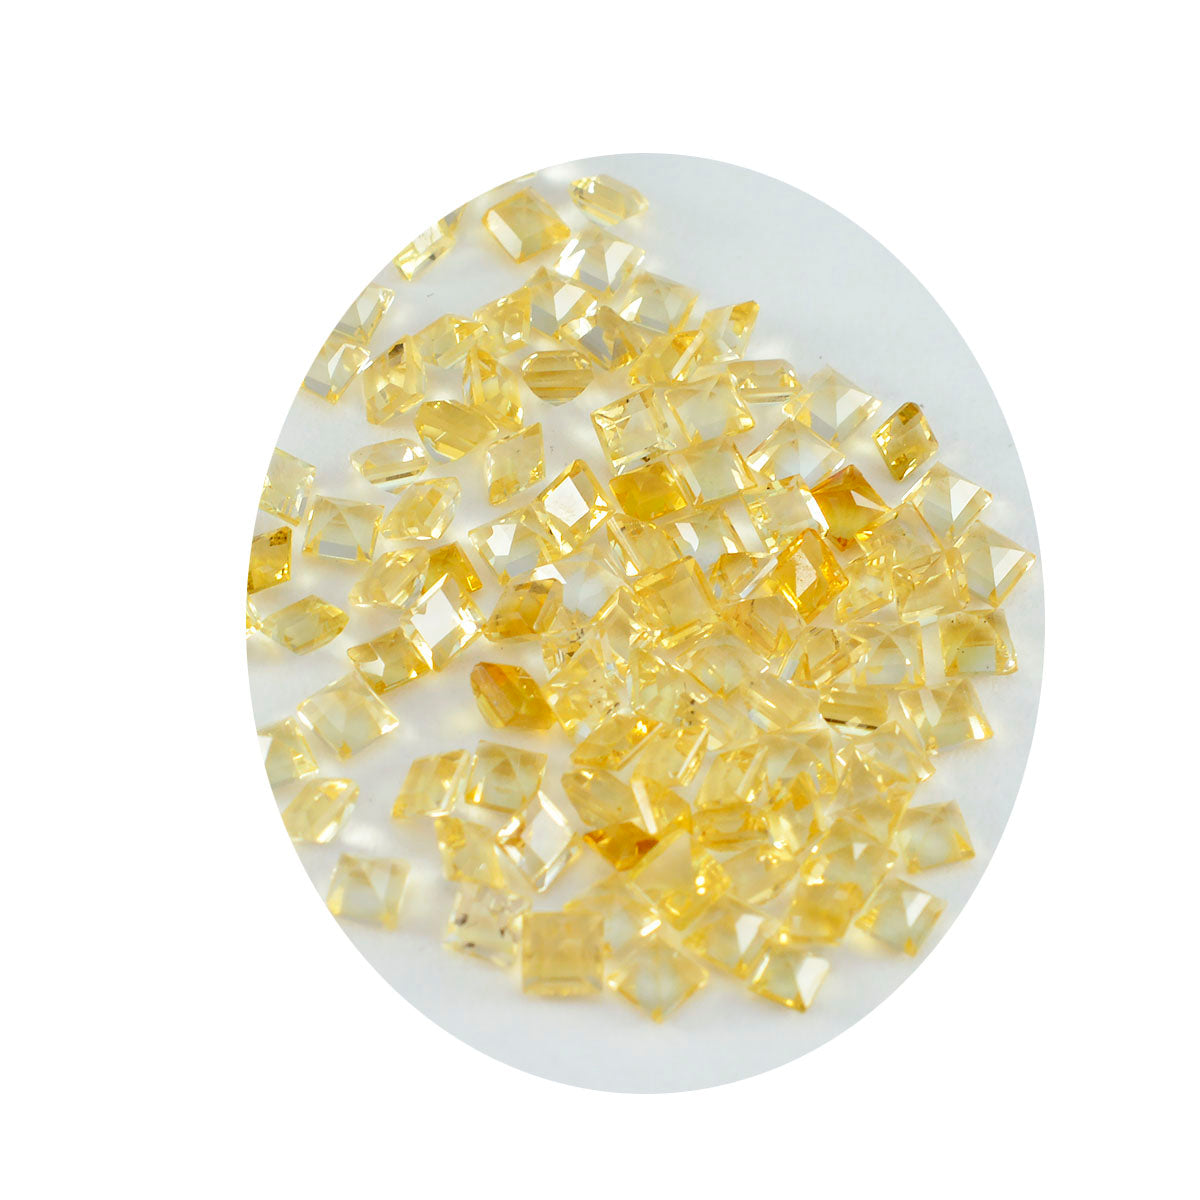 Riyogems 1 pieza de citrino amarillo natural facetado de 6 x 6 mm, forma cuadrada, piedra preciosa de calidad atractiva